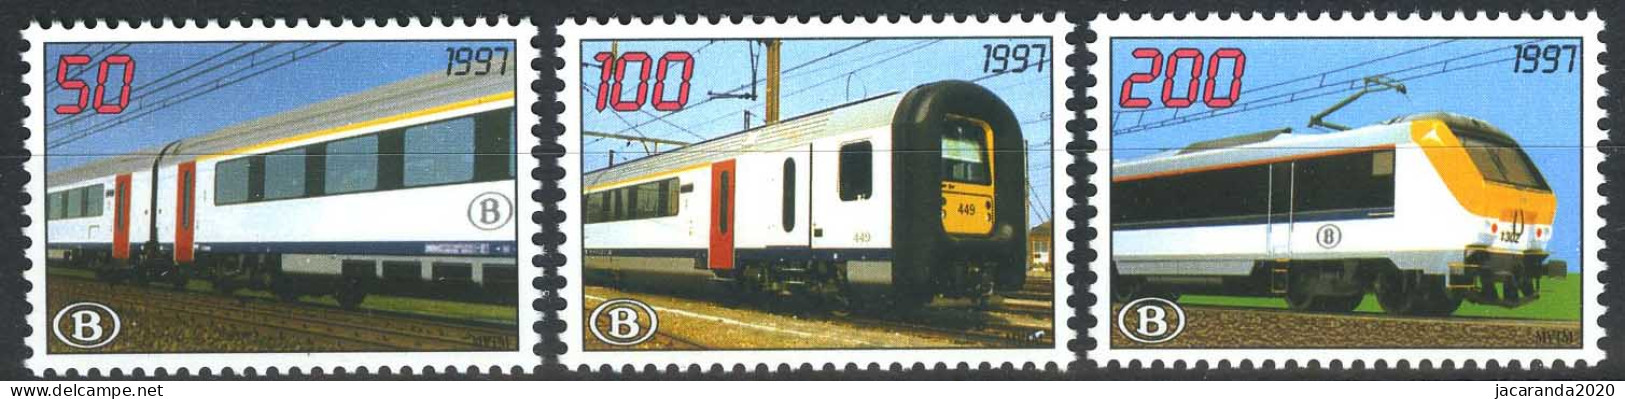 België TRV3/5 - Nieuwe Trein "I11" - 1996-2013 Vignettes [TRV]